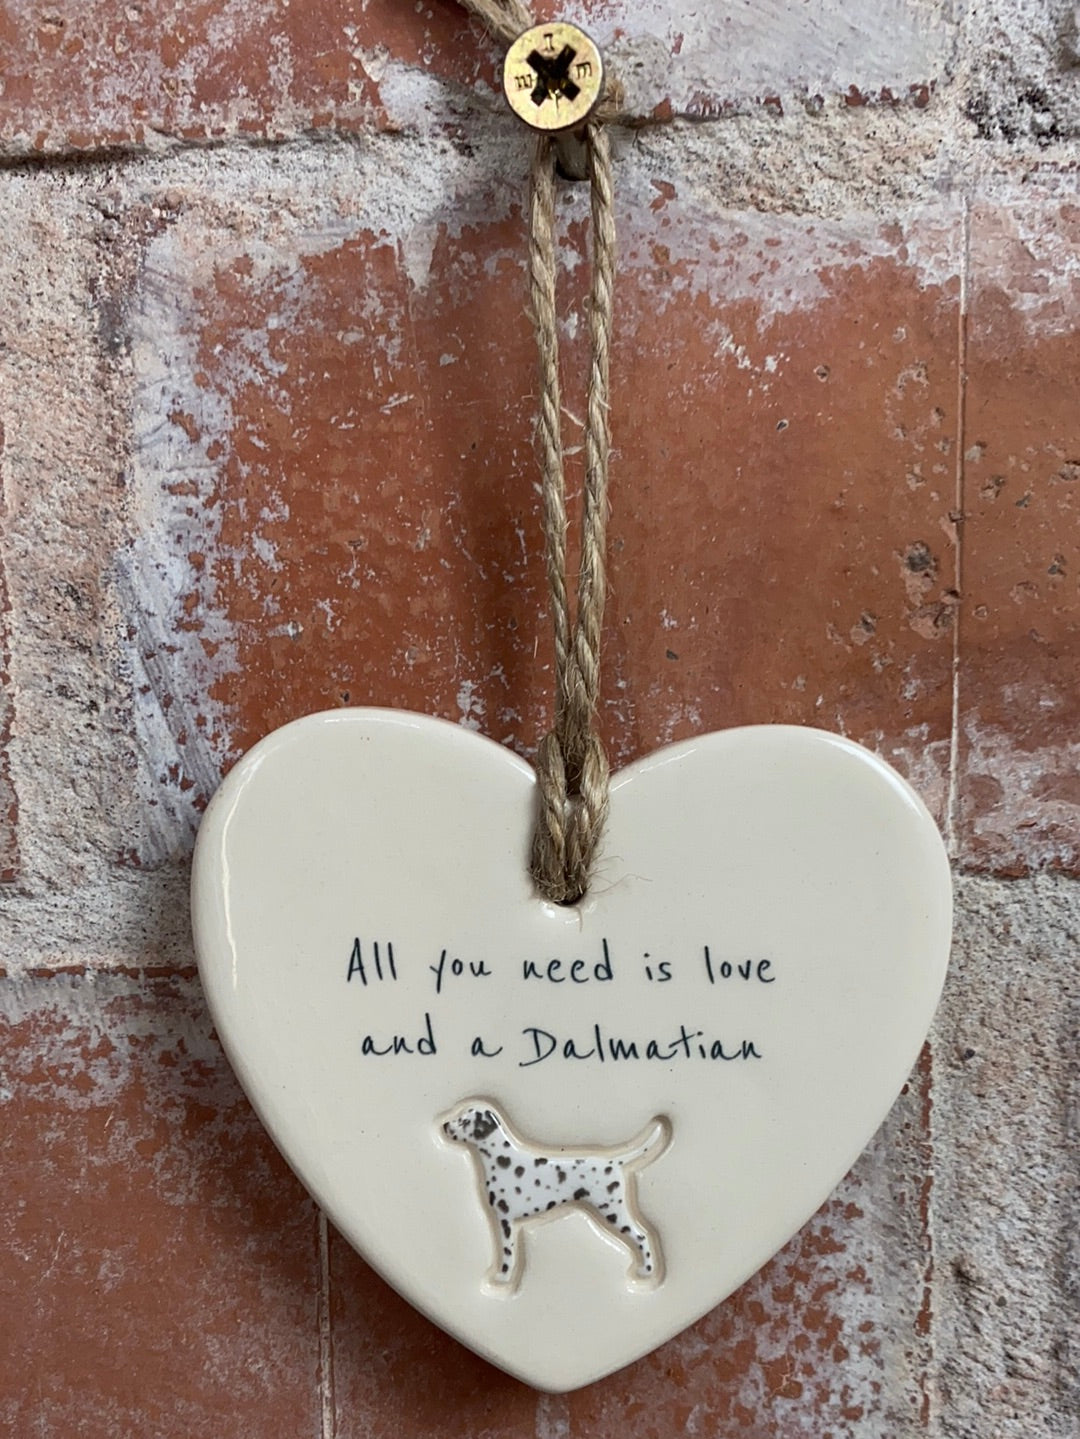 Dalmatian heart